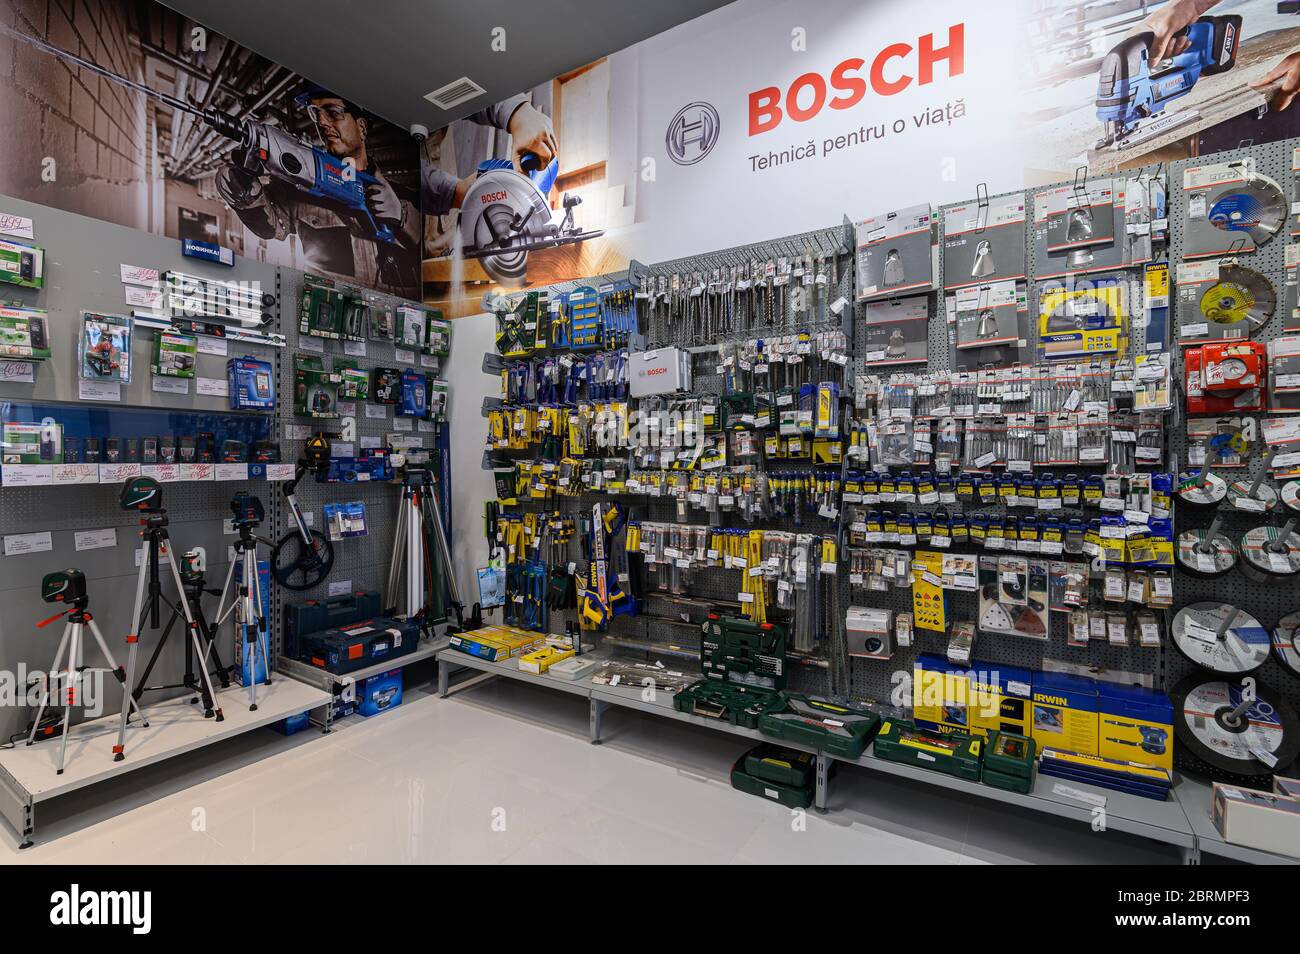 Regale in einem Heimwerkerladen mit einer Vielzahl von Elektrowerkzeugen, meist der Marke Bosch Stockfoto